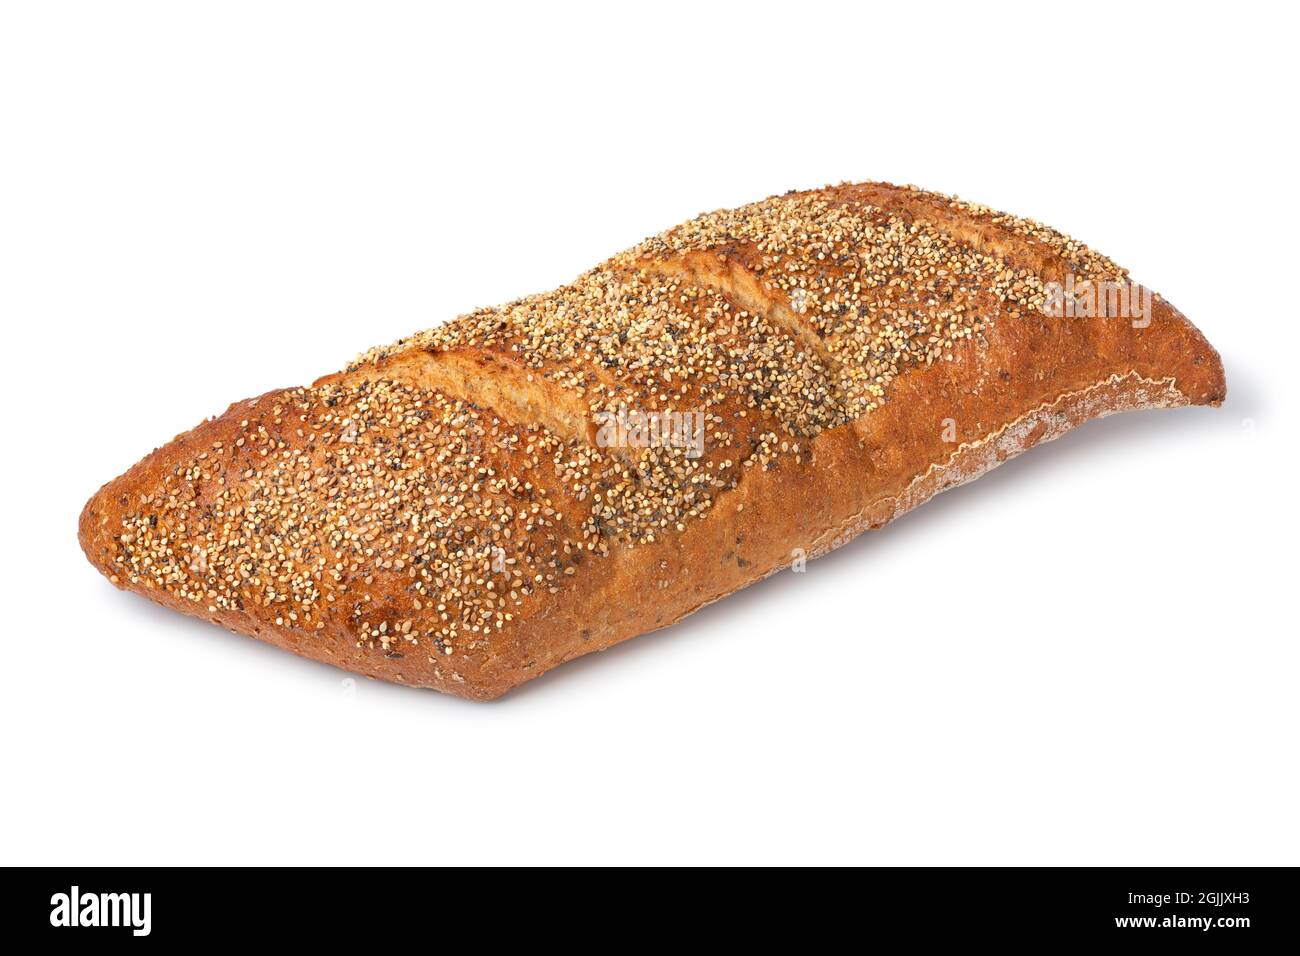 Pane integrale tradizionale di pasta madre in una forma speciale con semi isolati su sfondo bianco Foto Stock